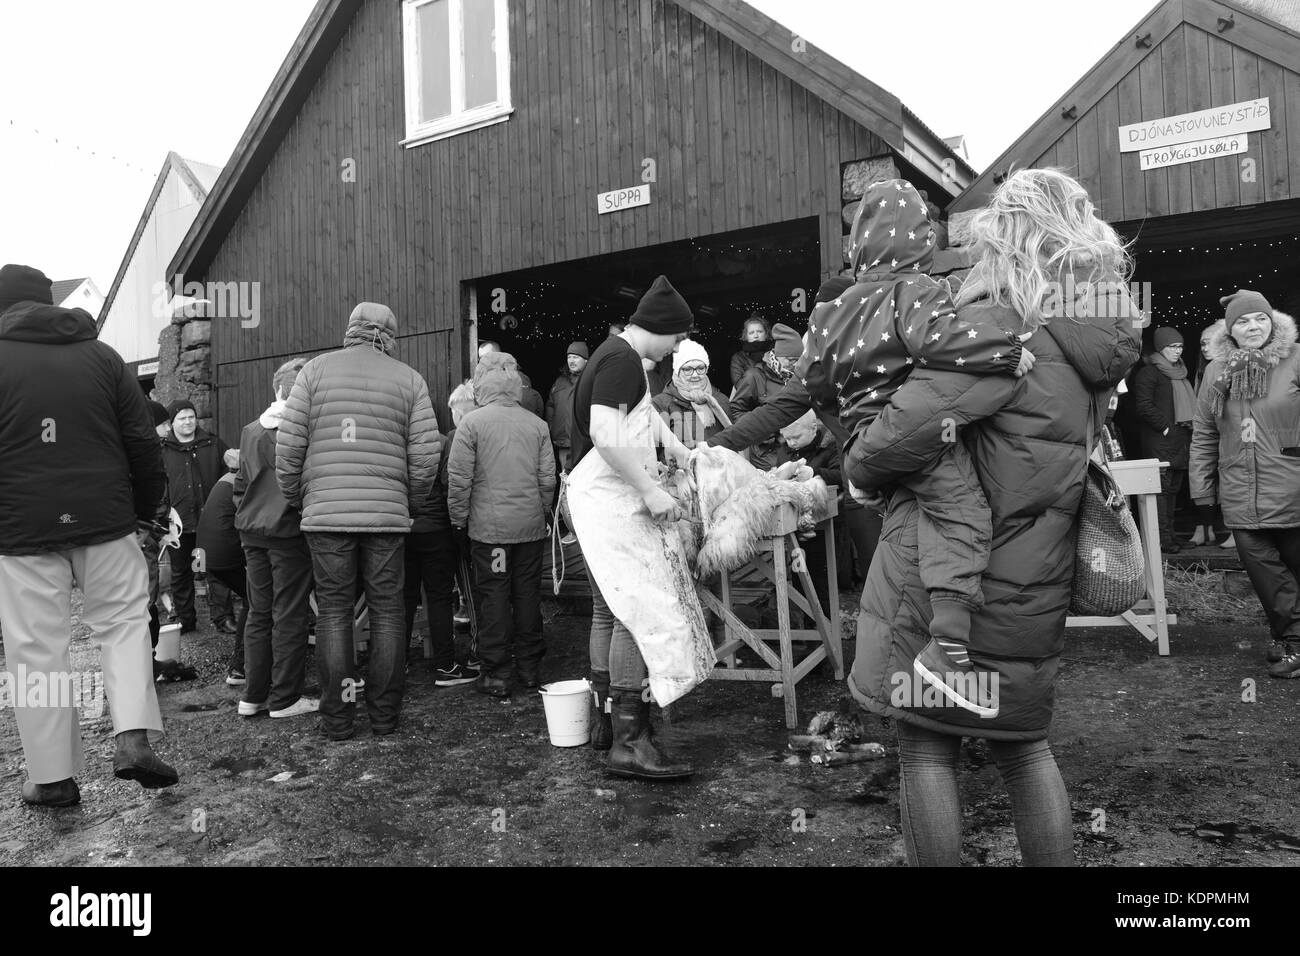 Eidi Village, Isola di Eysturoy, Isole Faroe, 14 ottobre 2017. Gli abitanti dei villaggi faroesi osservano la tradizionale dimostrazione di macellazione delle pecore al locale festival di Heystfagnadur Foto Stock